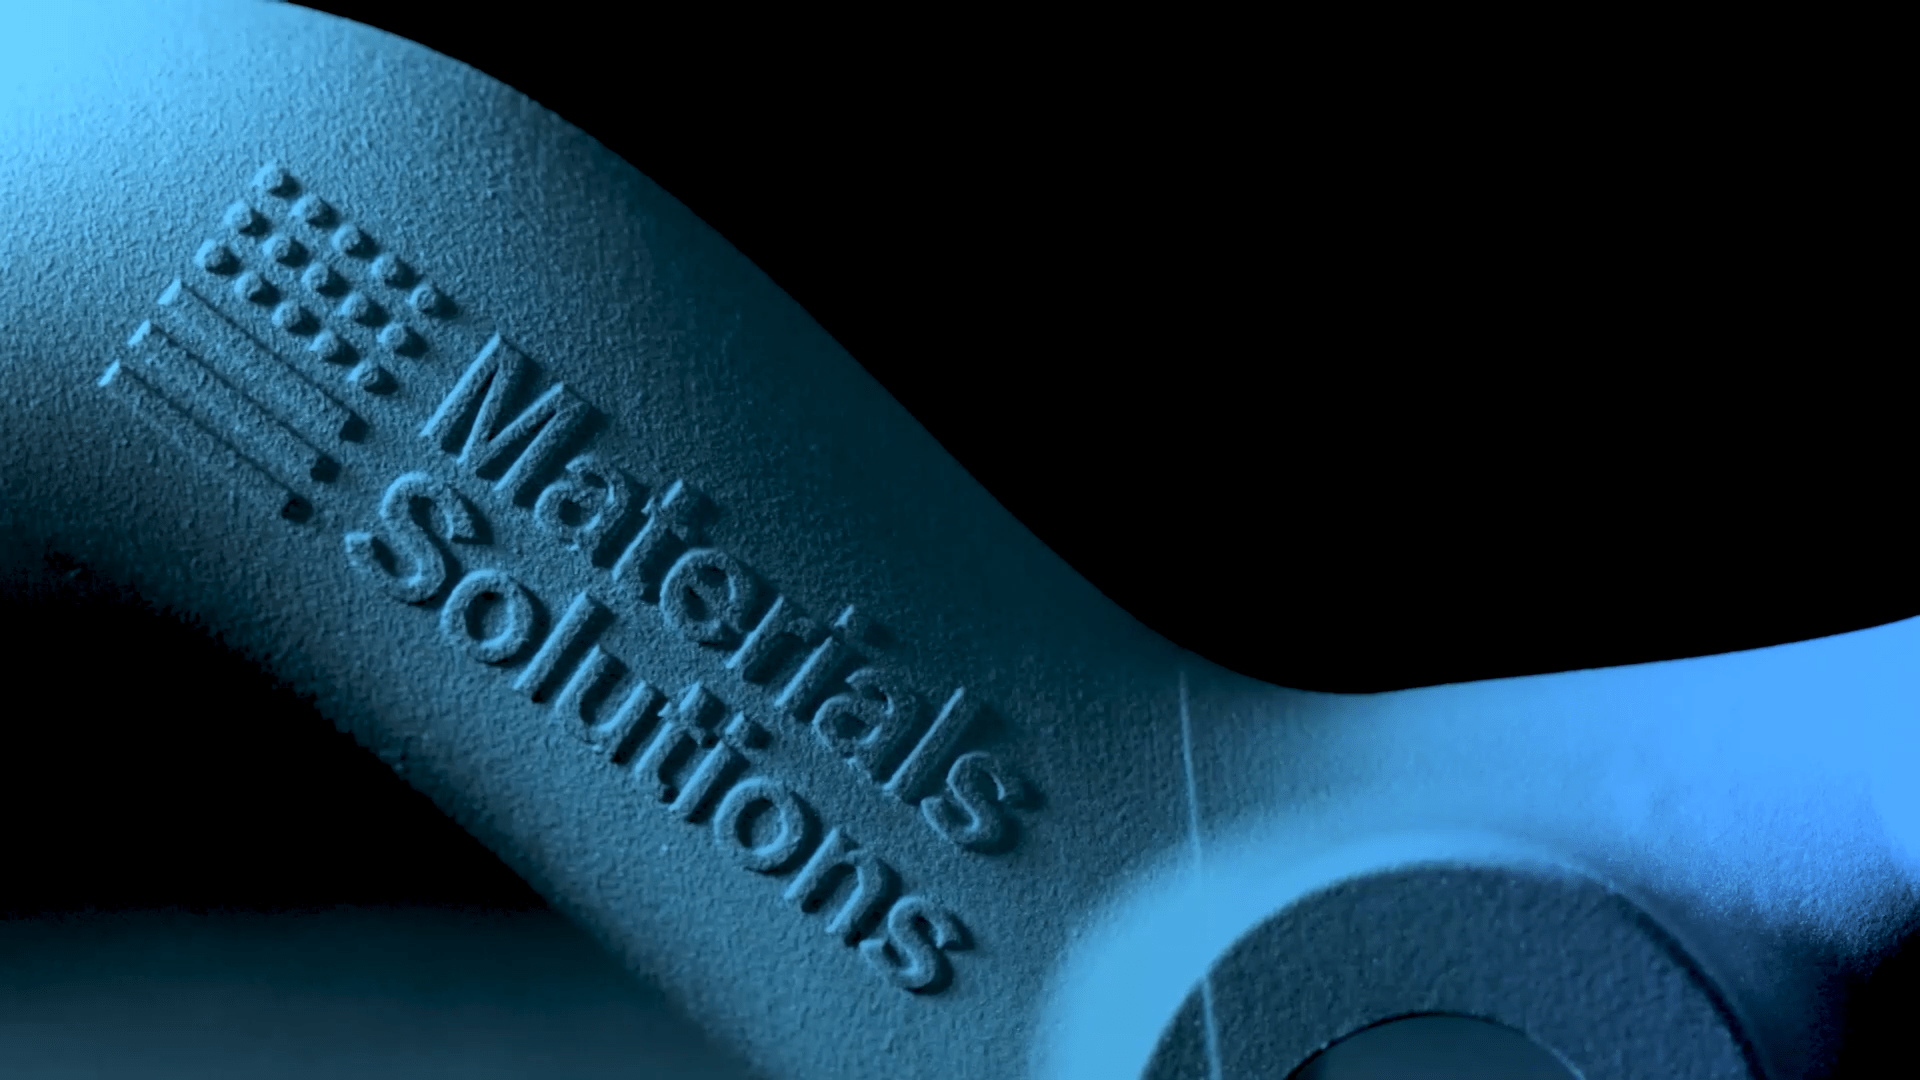 Materials Solutions: Additiv gefertigte Metallbauteile mit Qualitätsgarantie